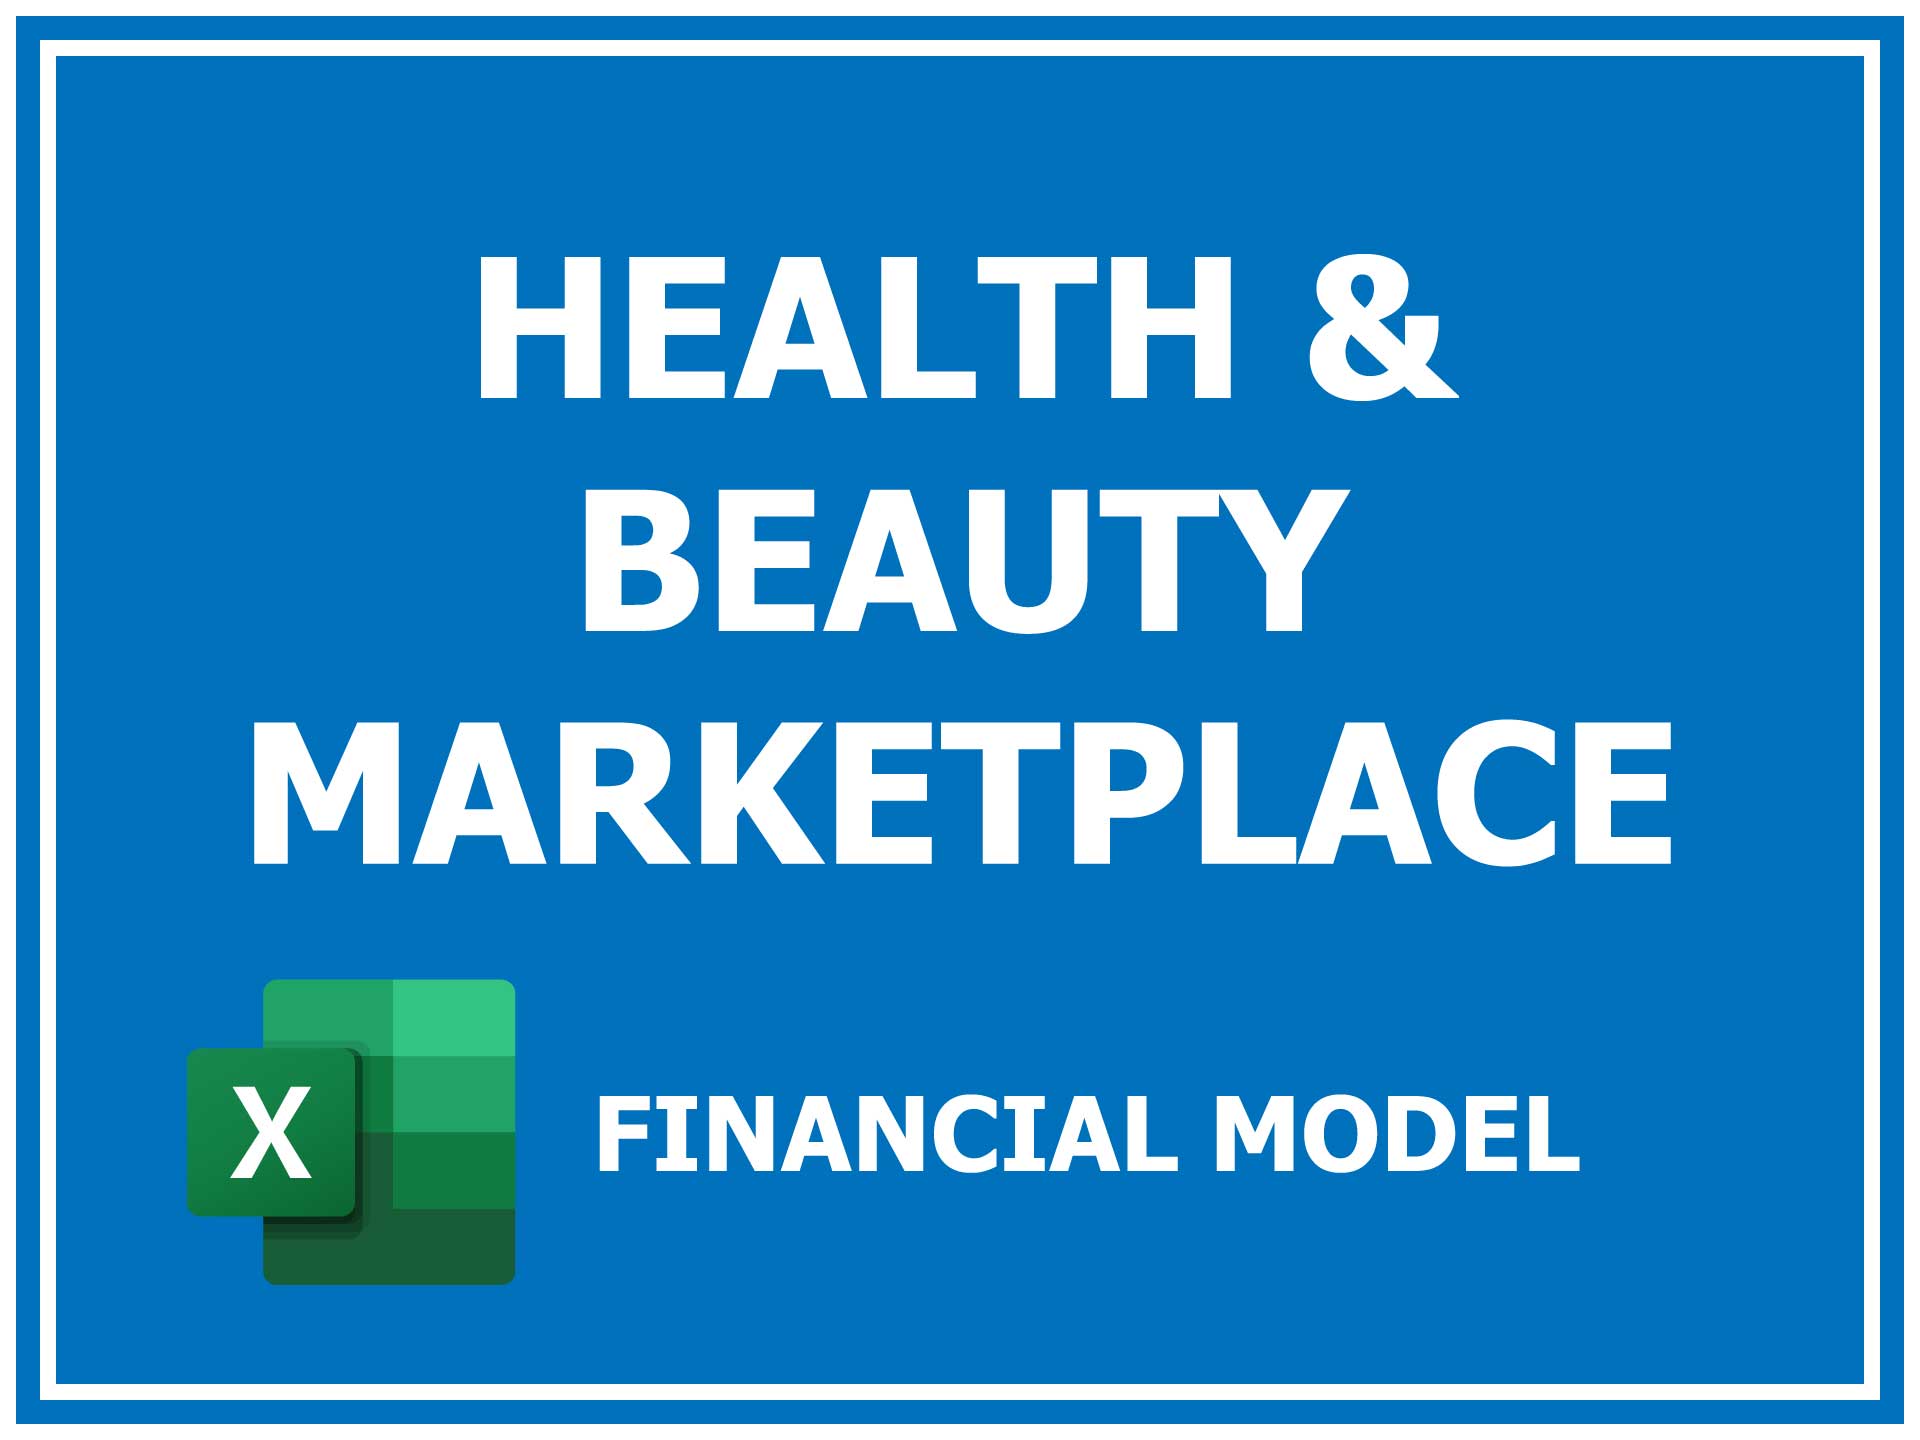 Health & Beauty Marketplace